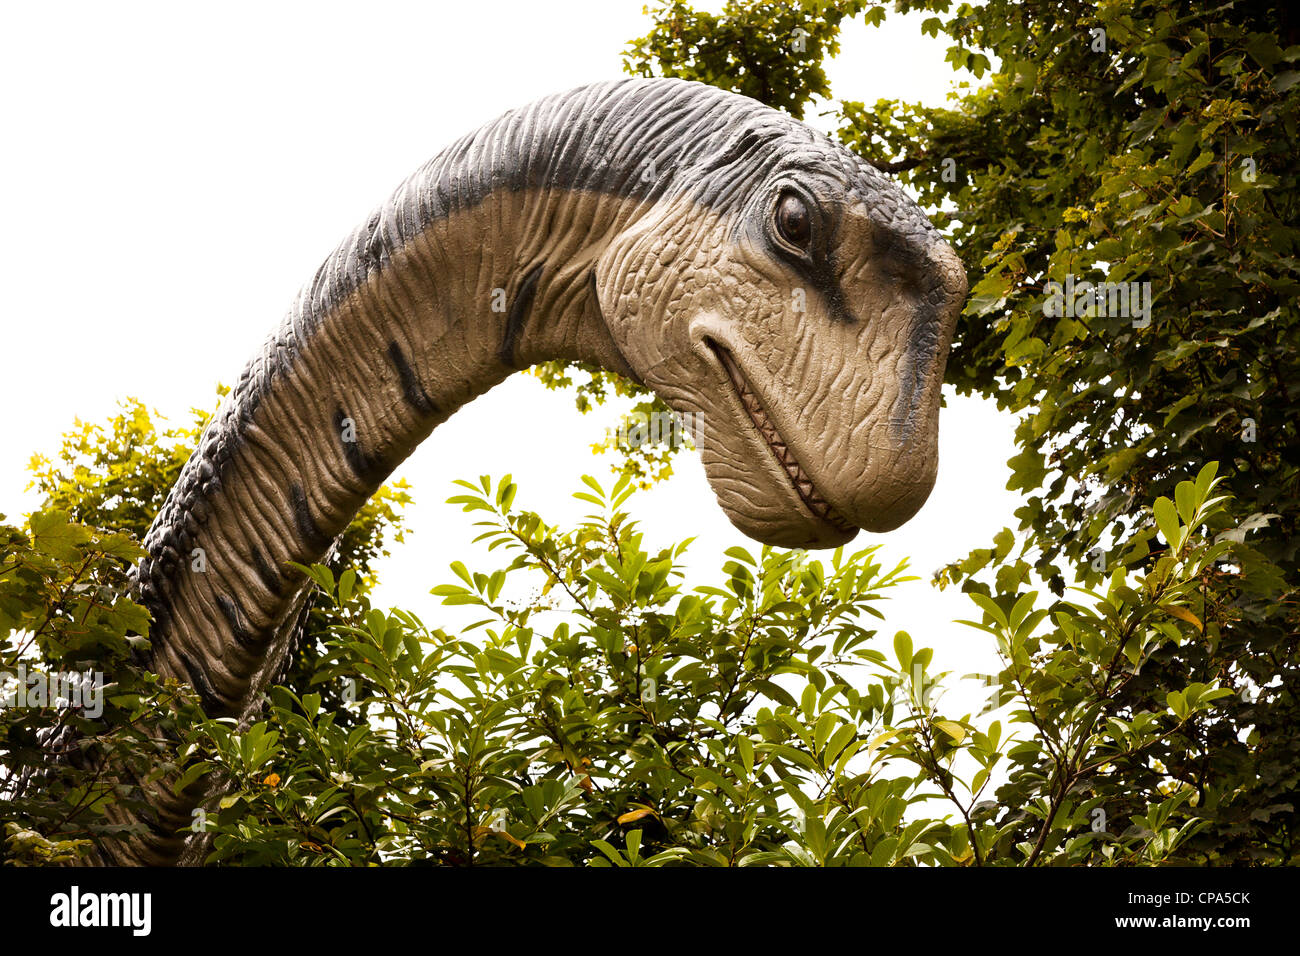 Dans le parc, l'Apatosaurus dinosaure Dan yr Ogof, Pays de Galles, Royaume-Uni Banque D'Images